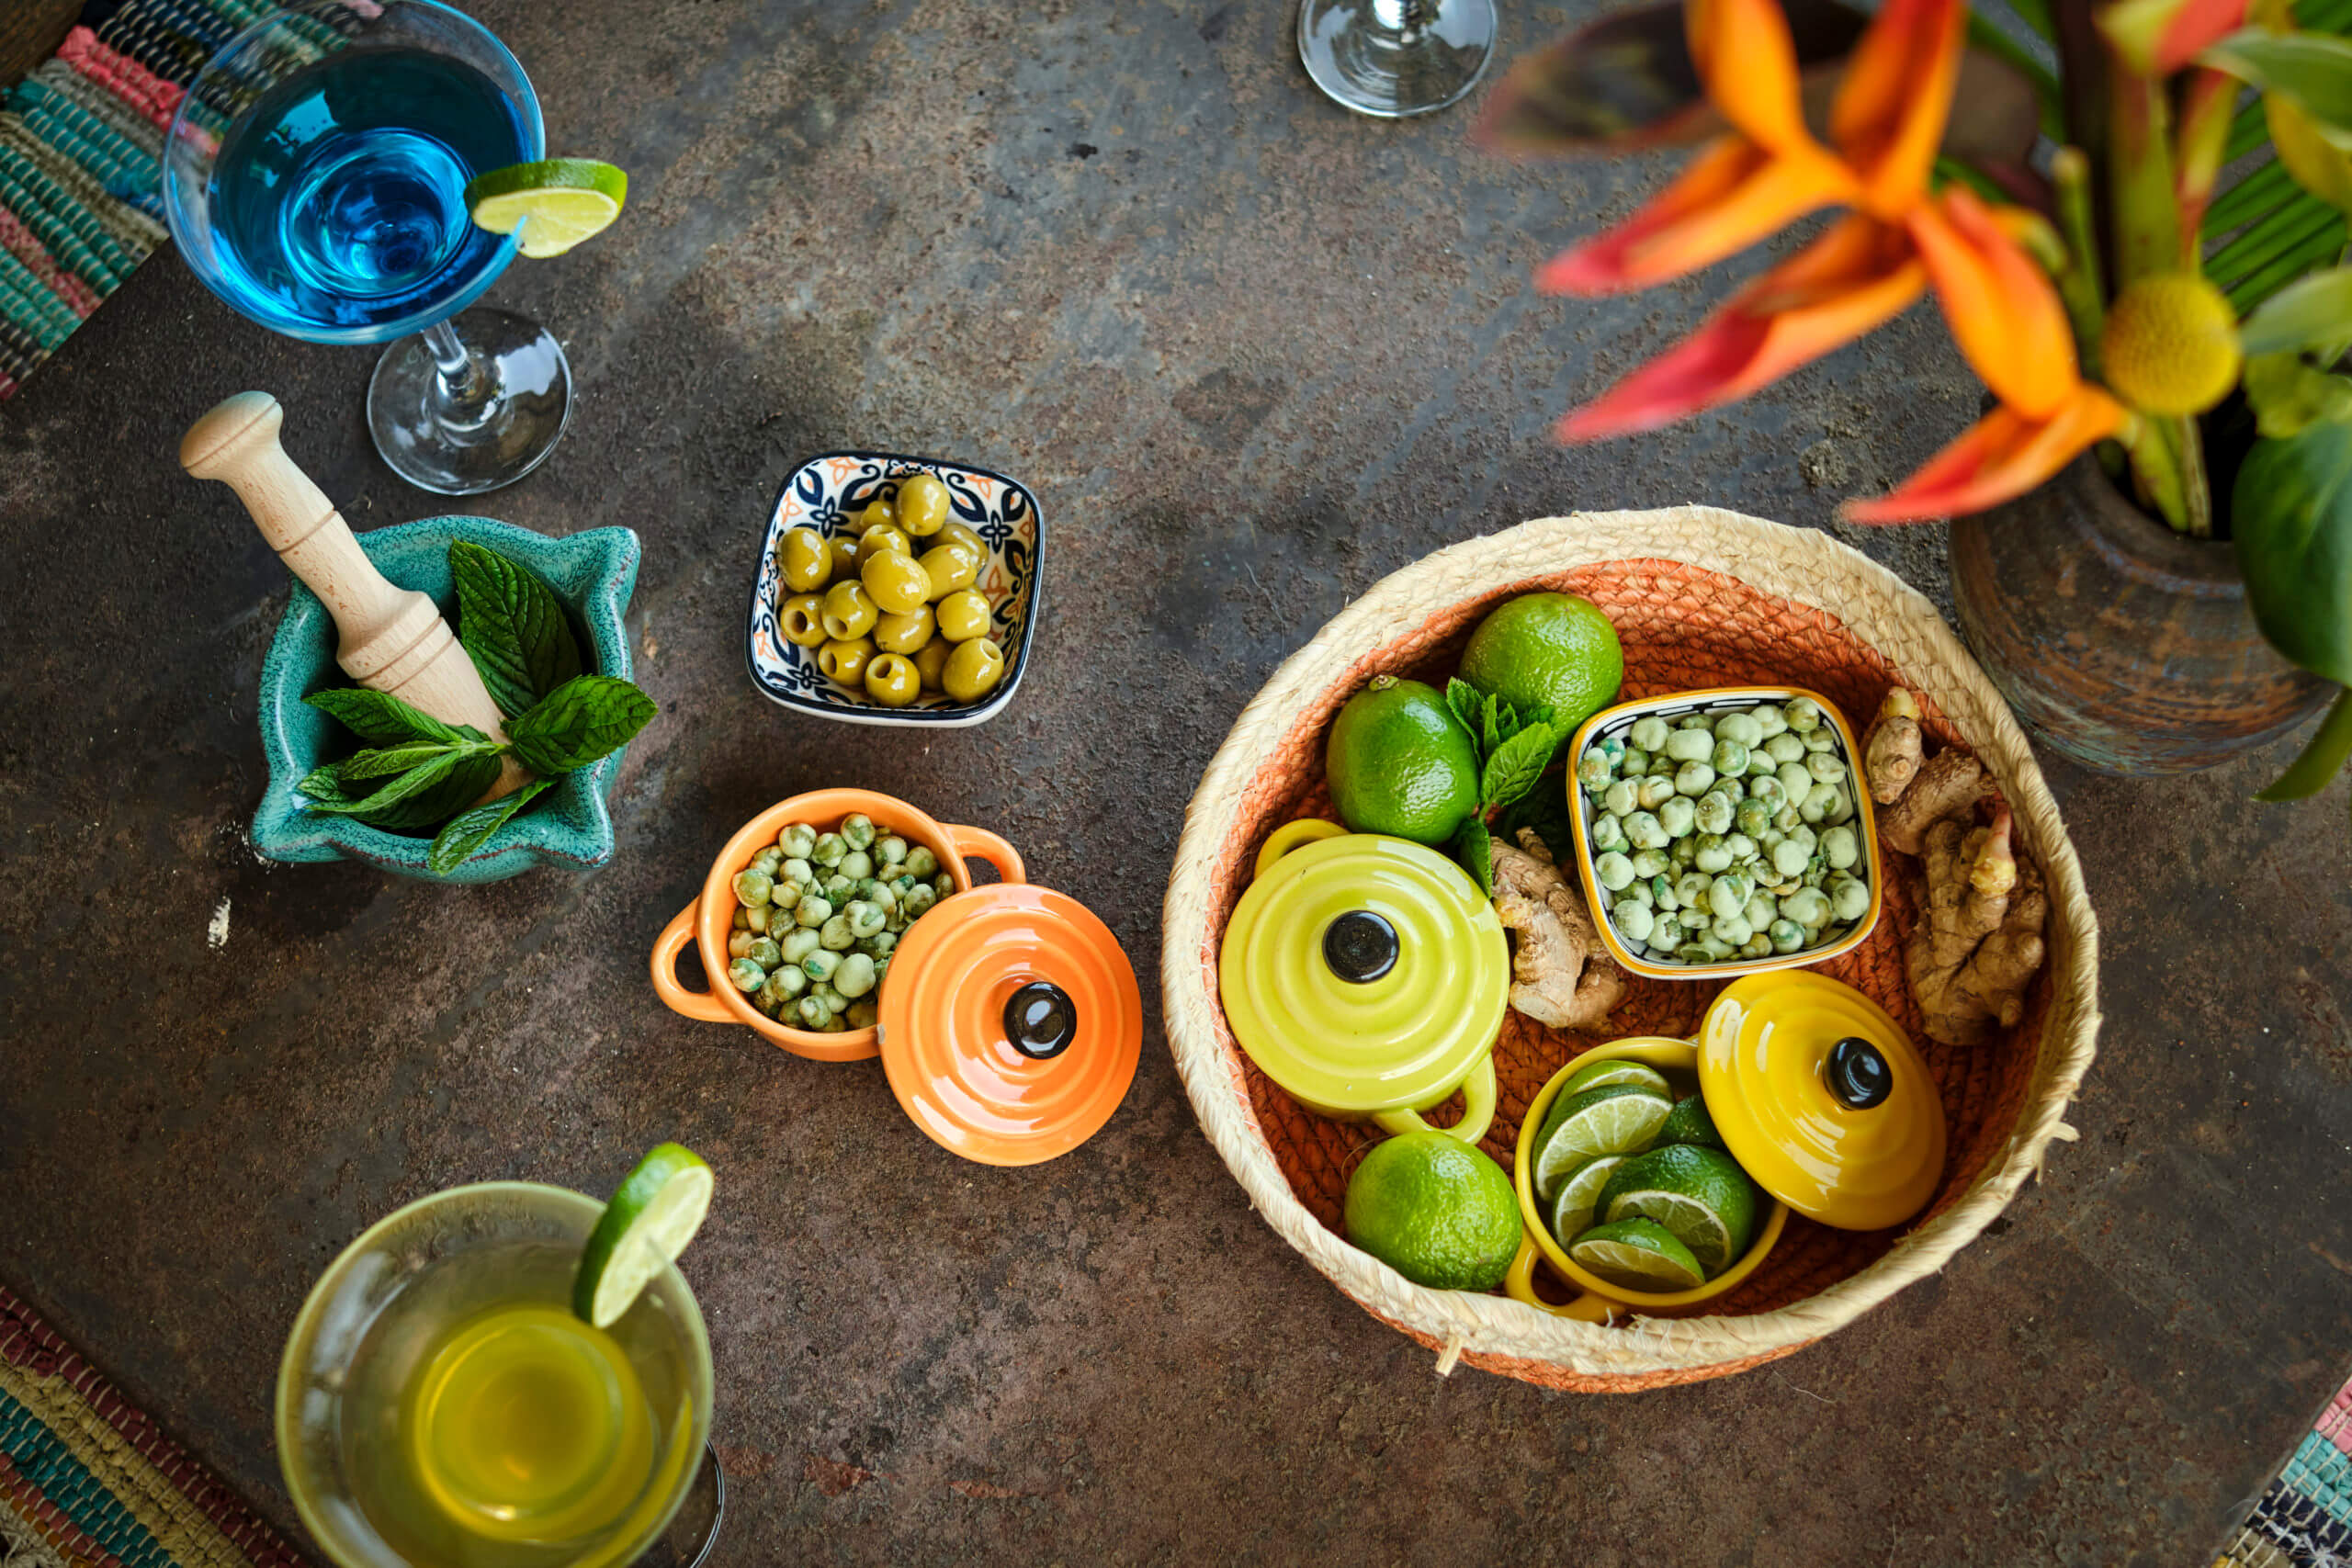 Table pour apéritif ou bamboche : cocktails, citrons verts, gingembre, menthe, cacahuètes au wasabi, etc.